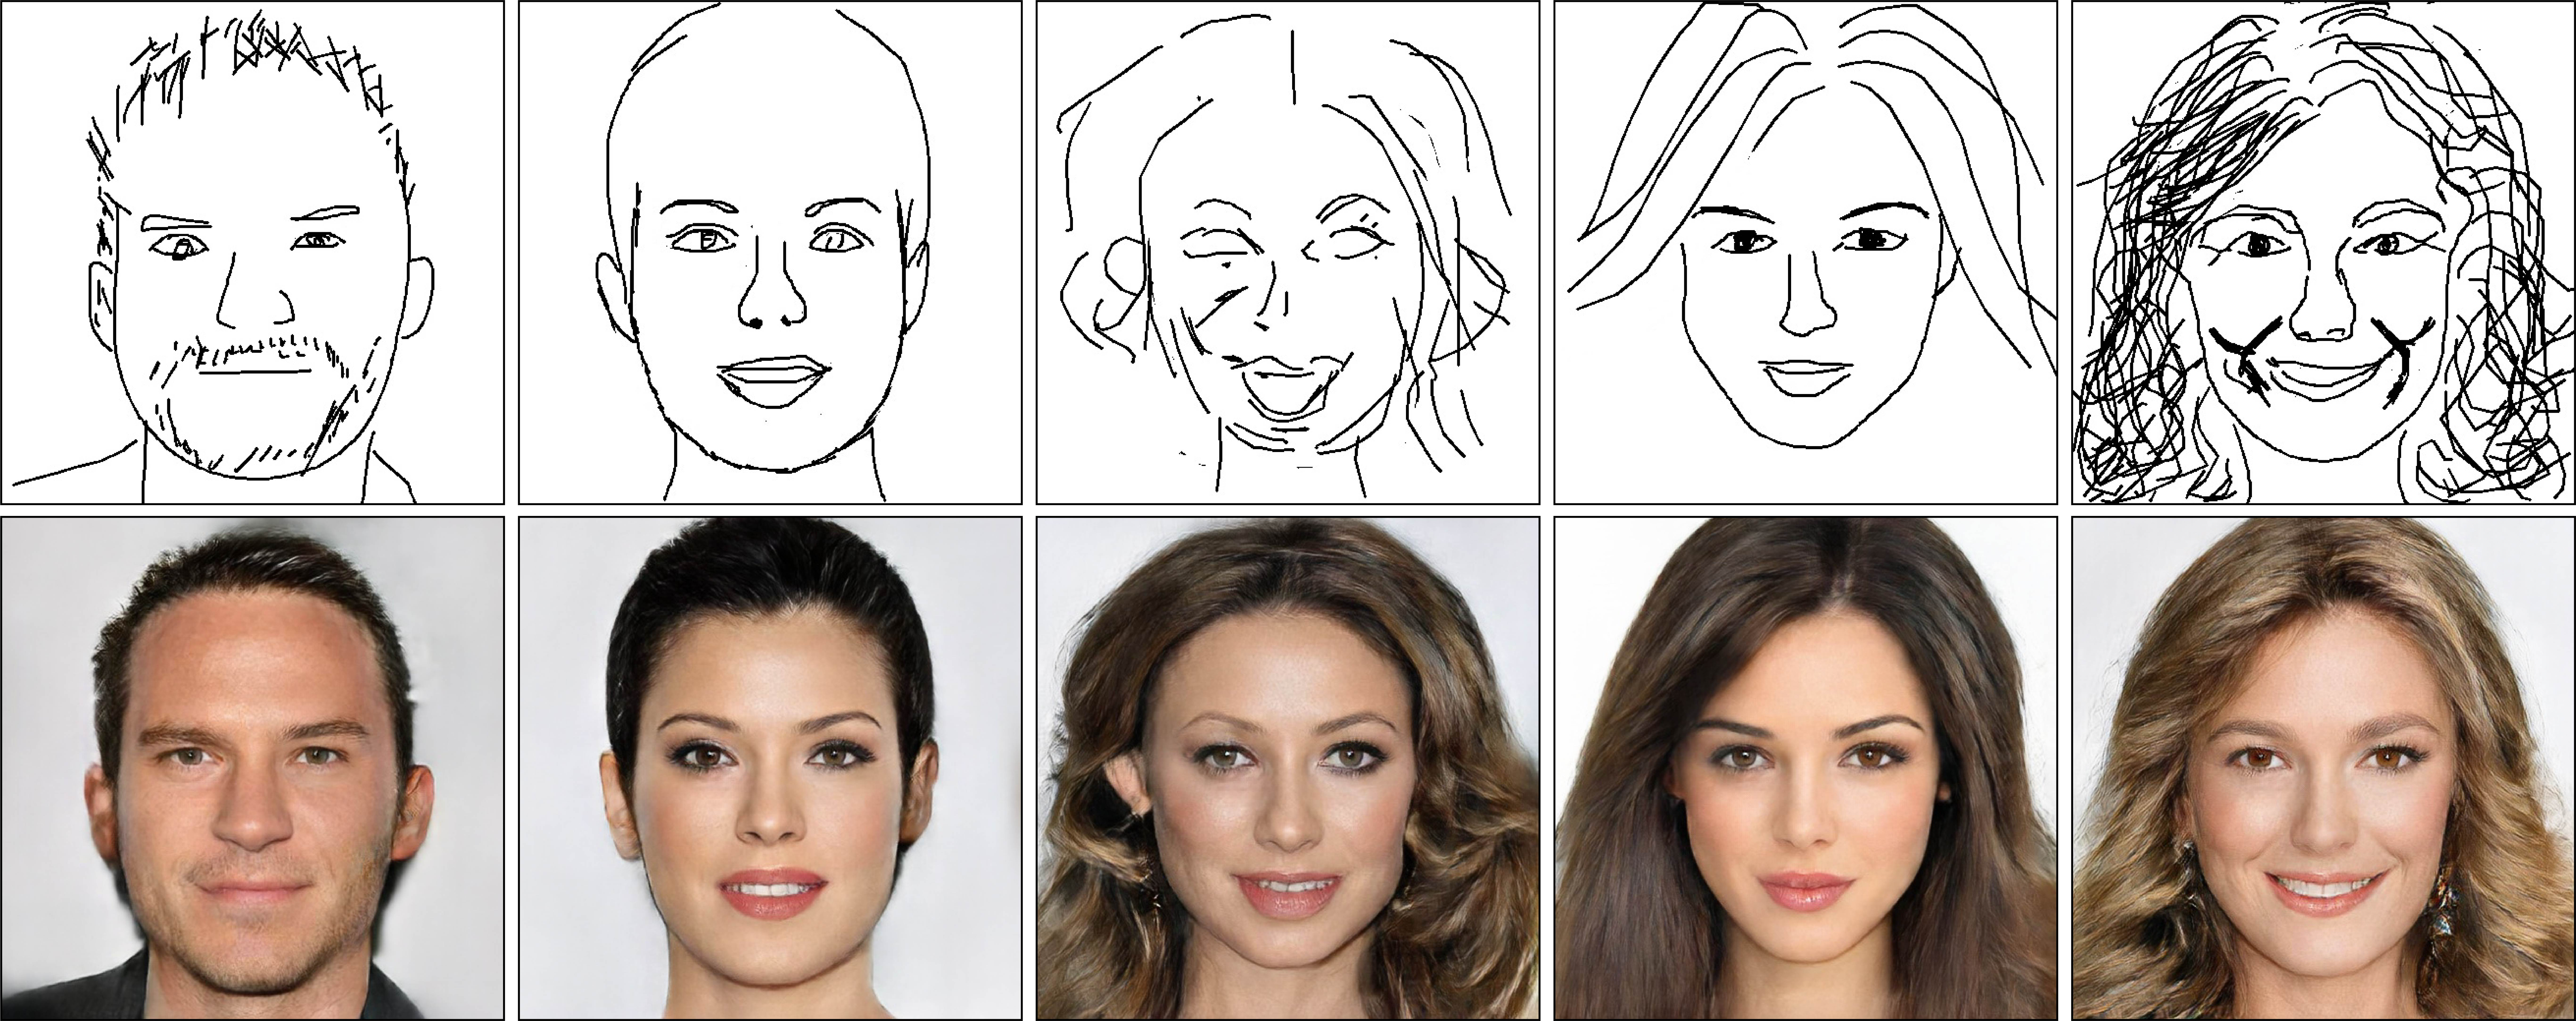 フリーハンドで描いた似顔絵が リアルな顔写真に変換される学習アプリが登場 ニコニコニュース